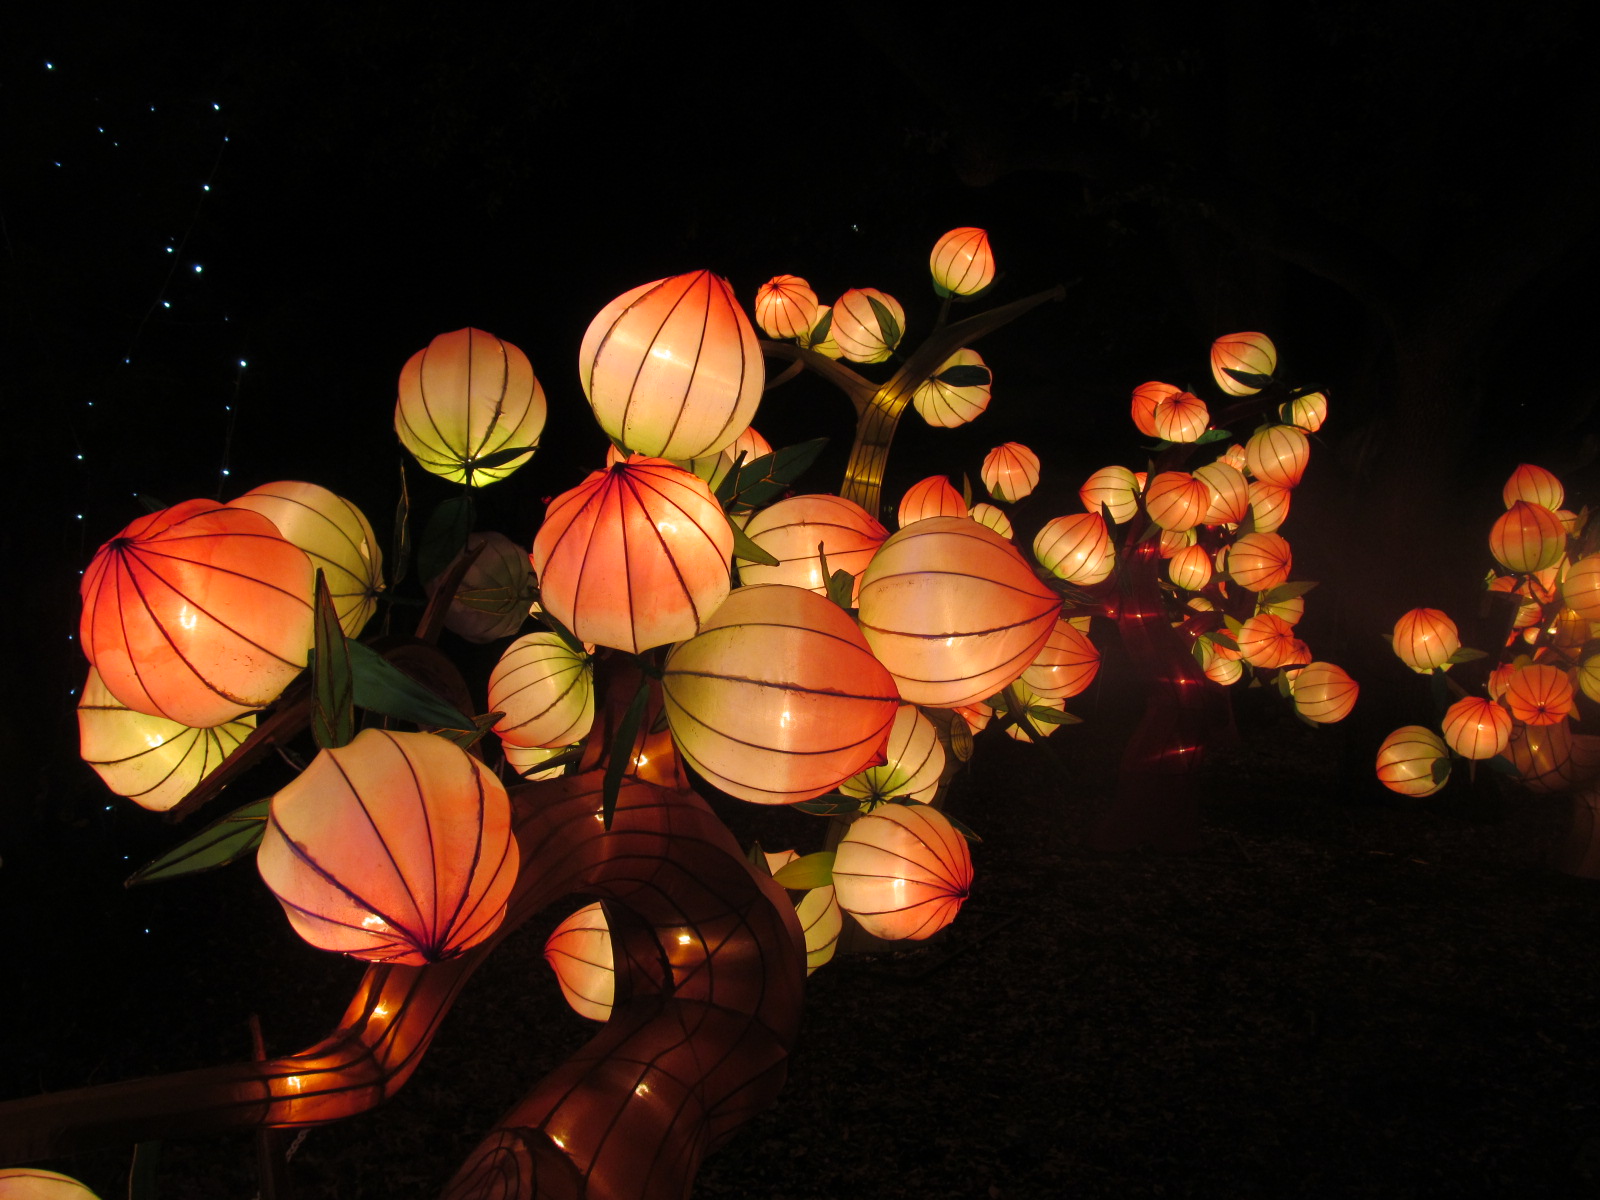 carta da parati lanterna cinese,illuminazione,arancia,fotografia di still life,lanterna,natura morta